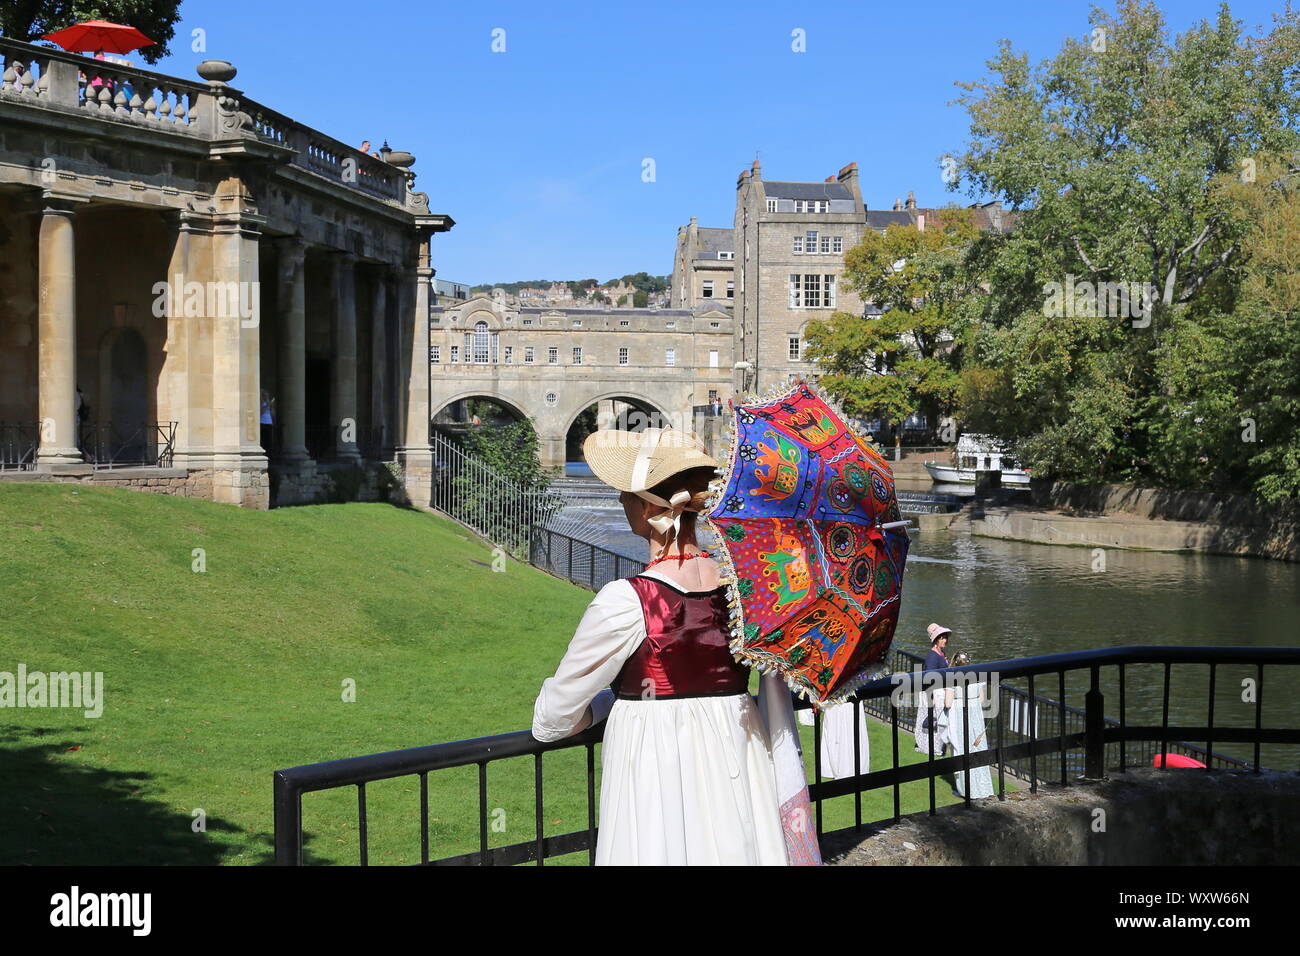 Frau Regency Kostümen. Jane Austen Festival 2019, Parade Gardens, Badewanne, Somerset, England, Großbritannien, Großbritannien, Europa Stockfoto